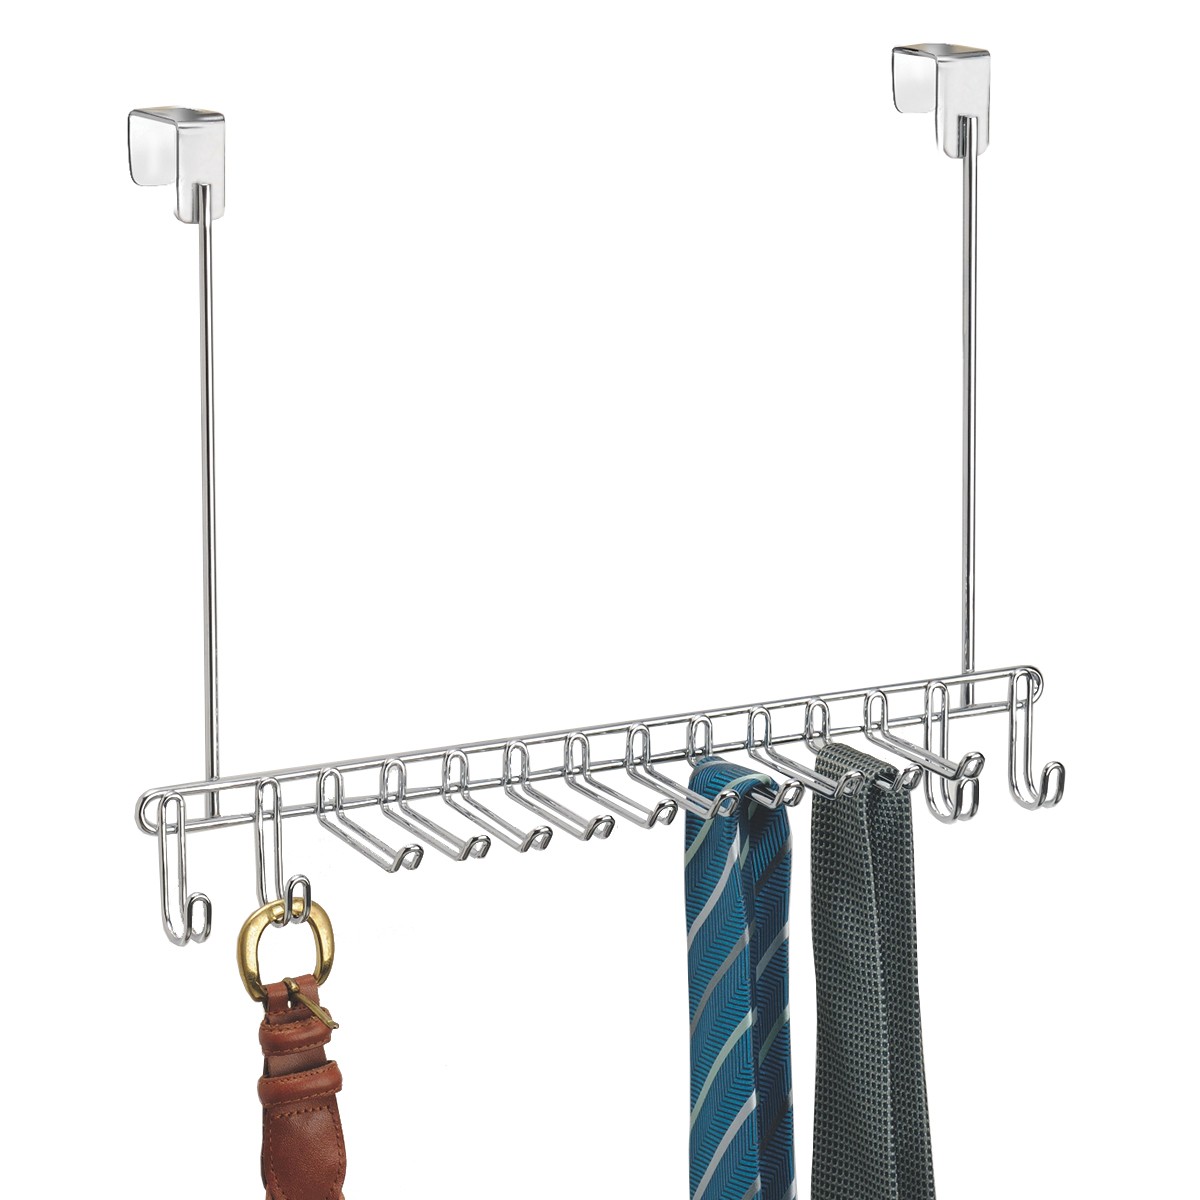 fixation au mur couleur : bronze mDesign porte-cravates rangement foulard pour écharpes et foulards porte-ceinture pour une meilleure organisation des vos accessoires 